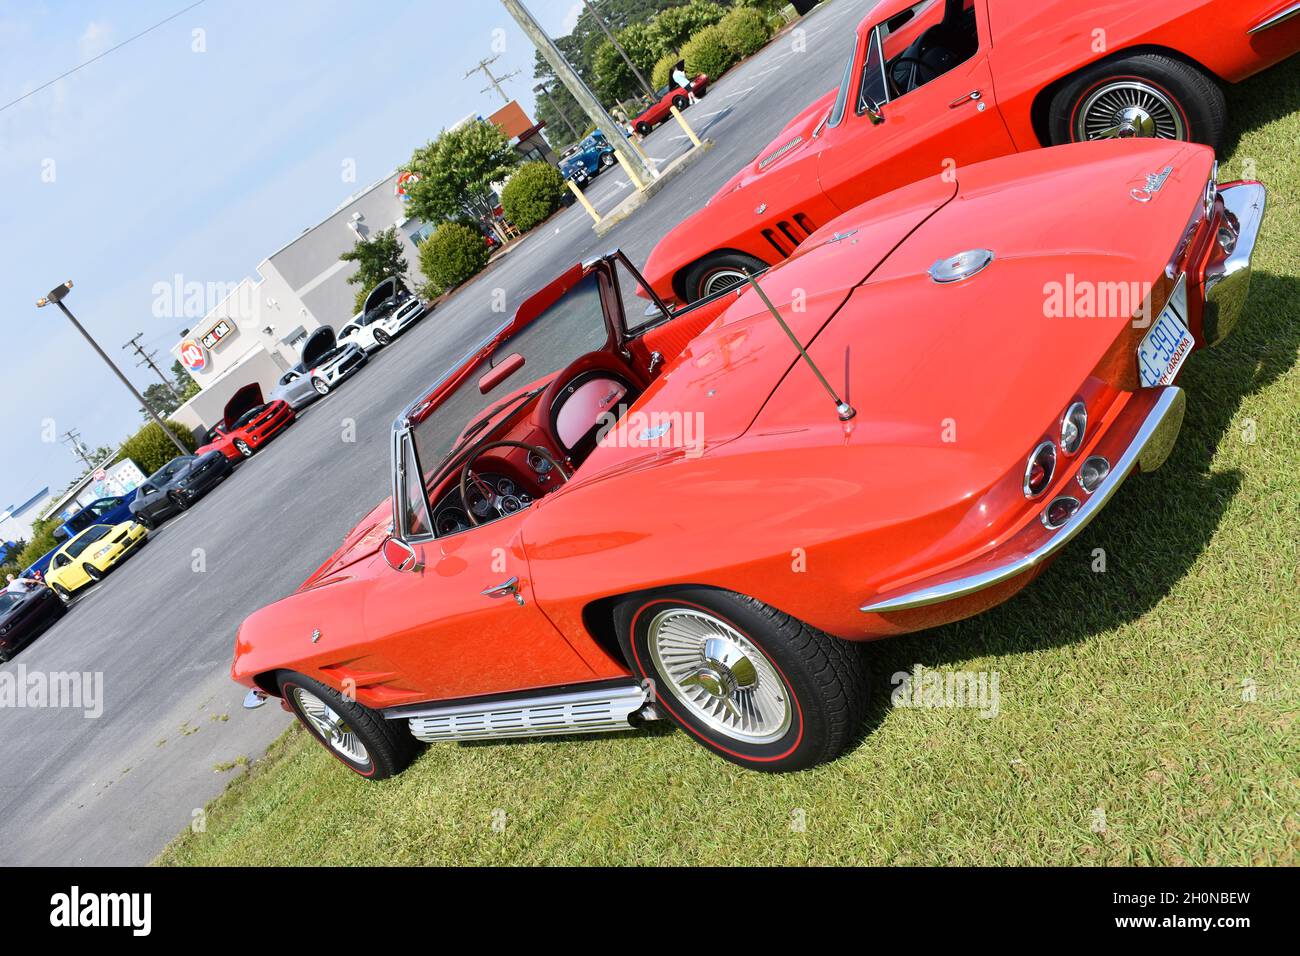 Una Chevrolet Corvette Convertibile Rosso anni '60 in mostra un Car Show. Foto Stock